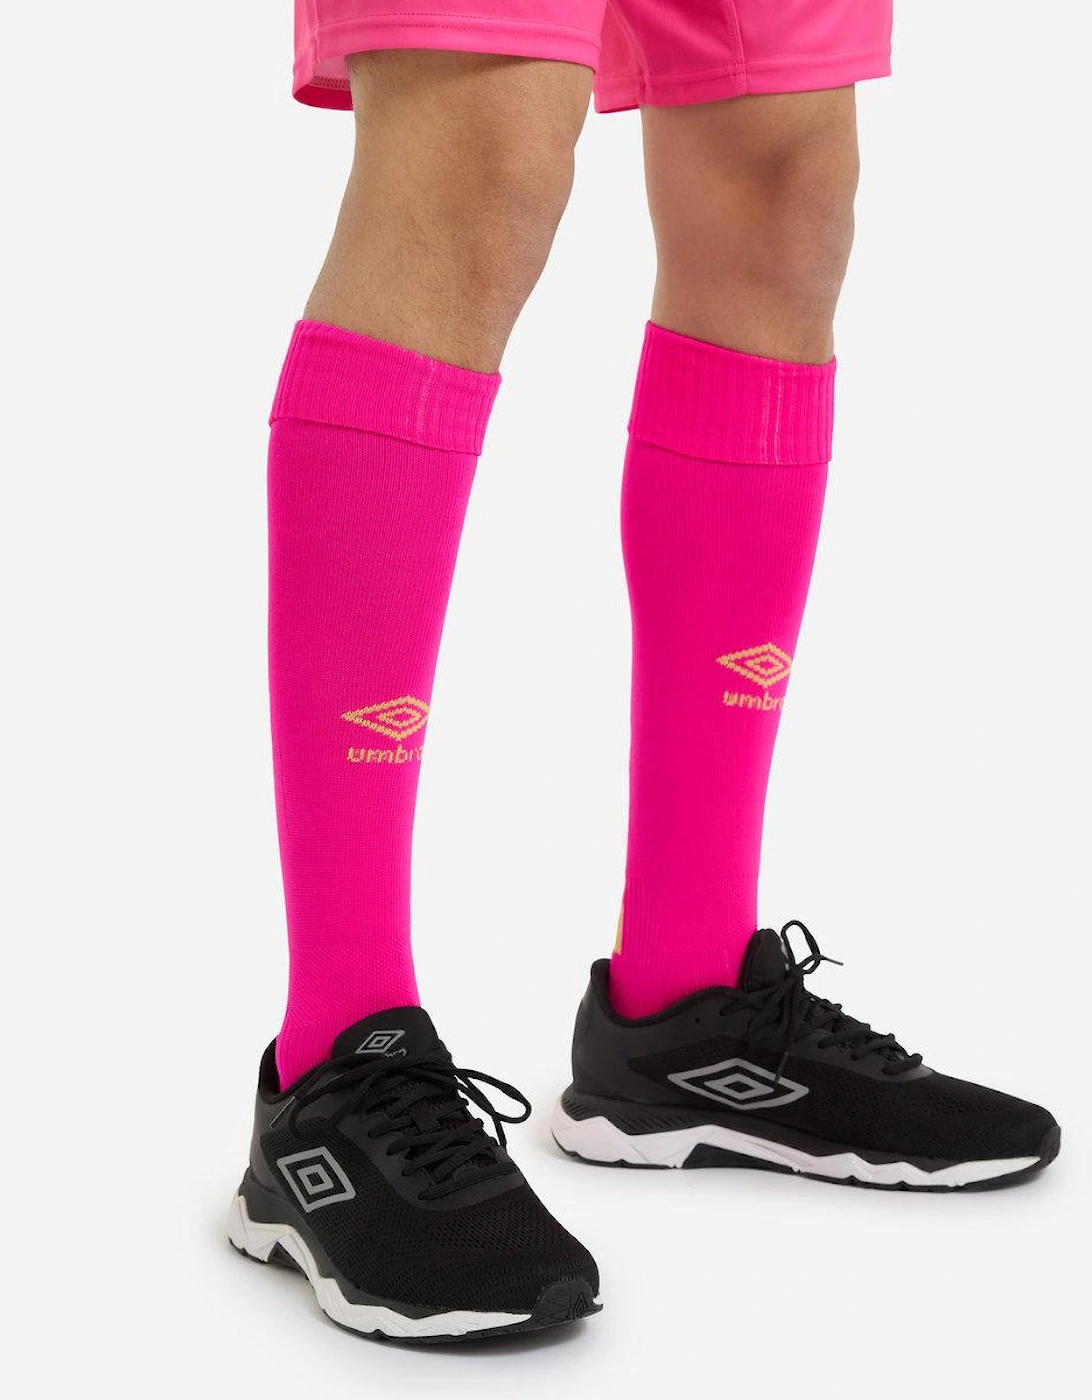 Unisex Adult Pro Whippets FC Goalkeeper Socks, 2 of 1